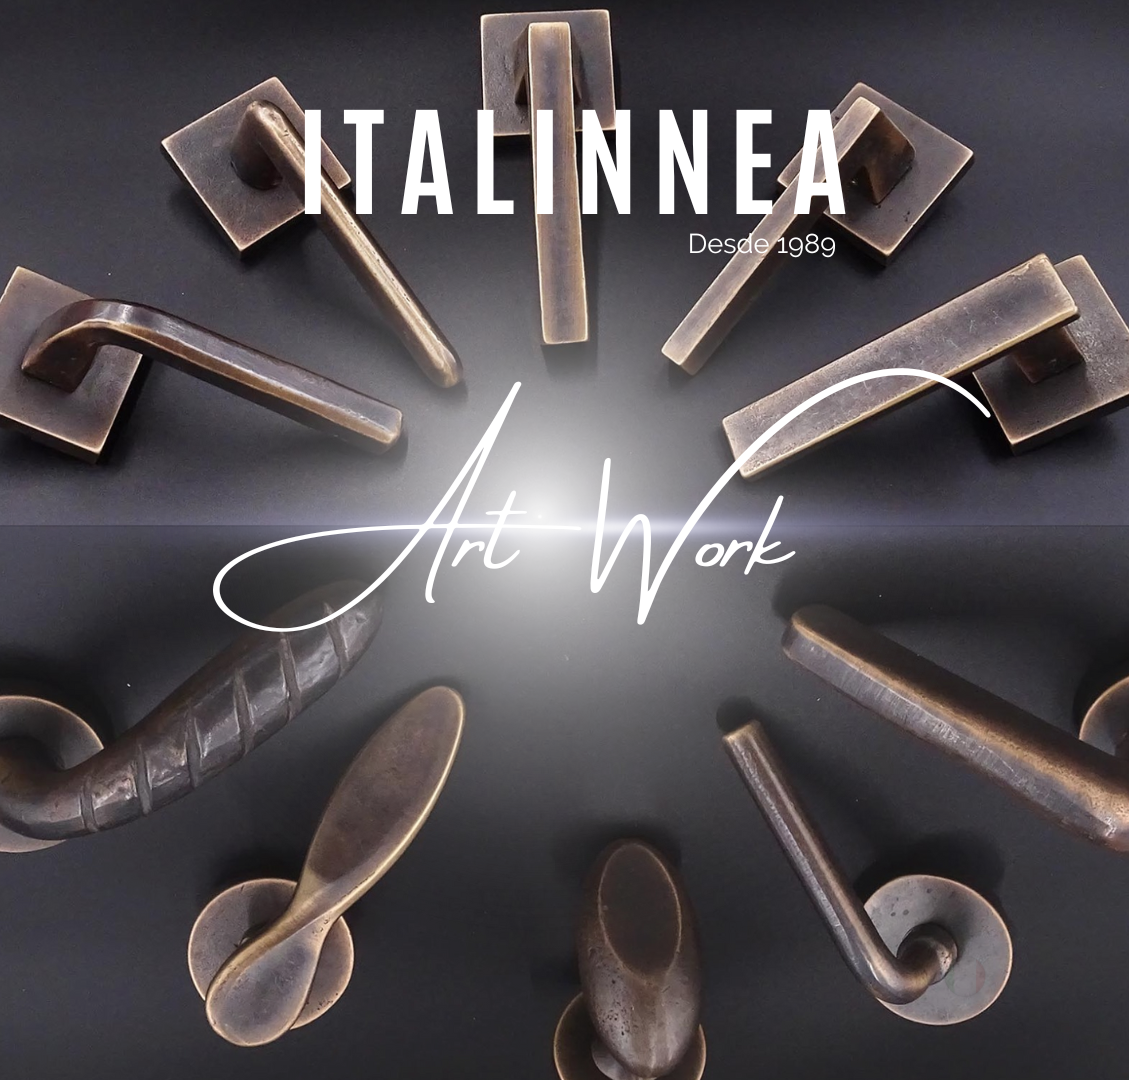 Italinnea – Manillas Italianas de bronce forjado, fabricadas con técnicas milenarias